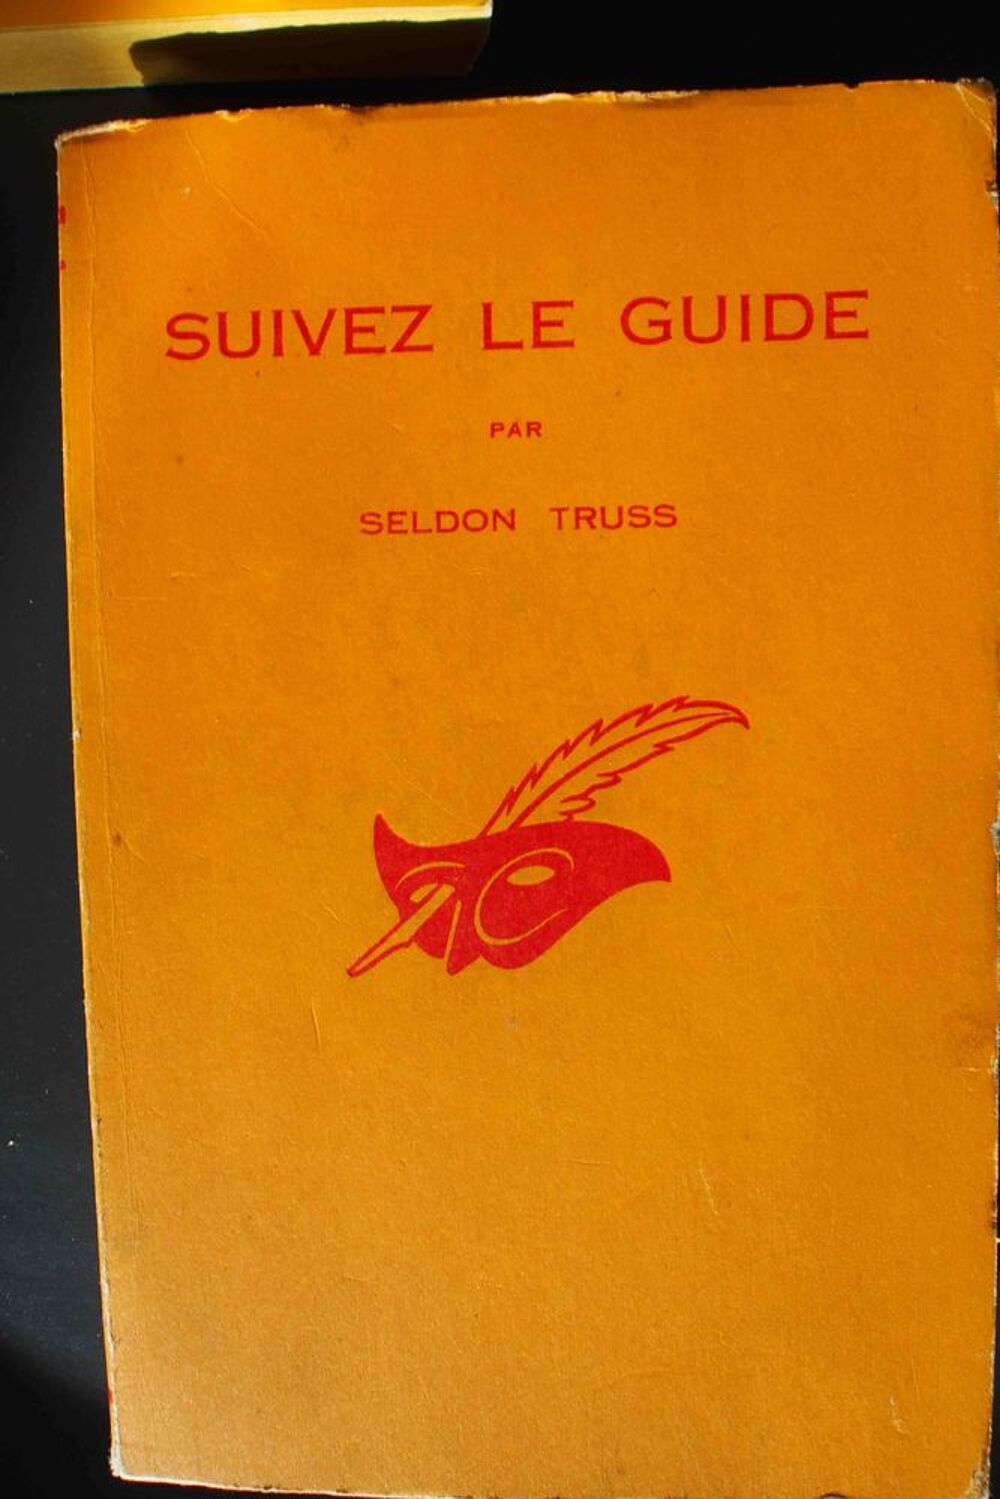 Suivez le guide - Seldon Truss, Livres et BD